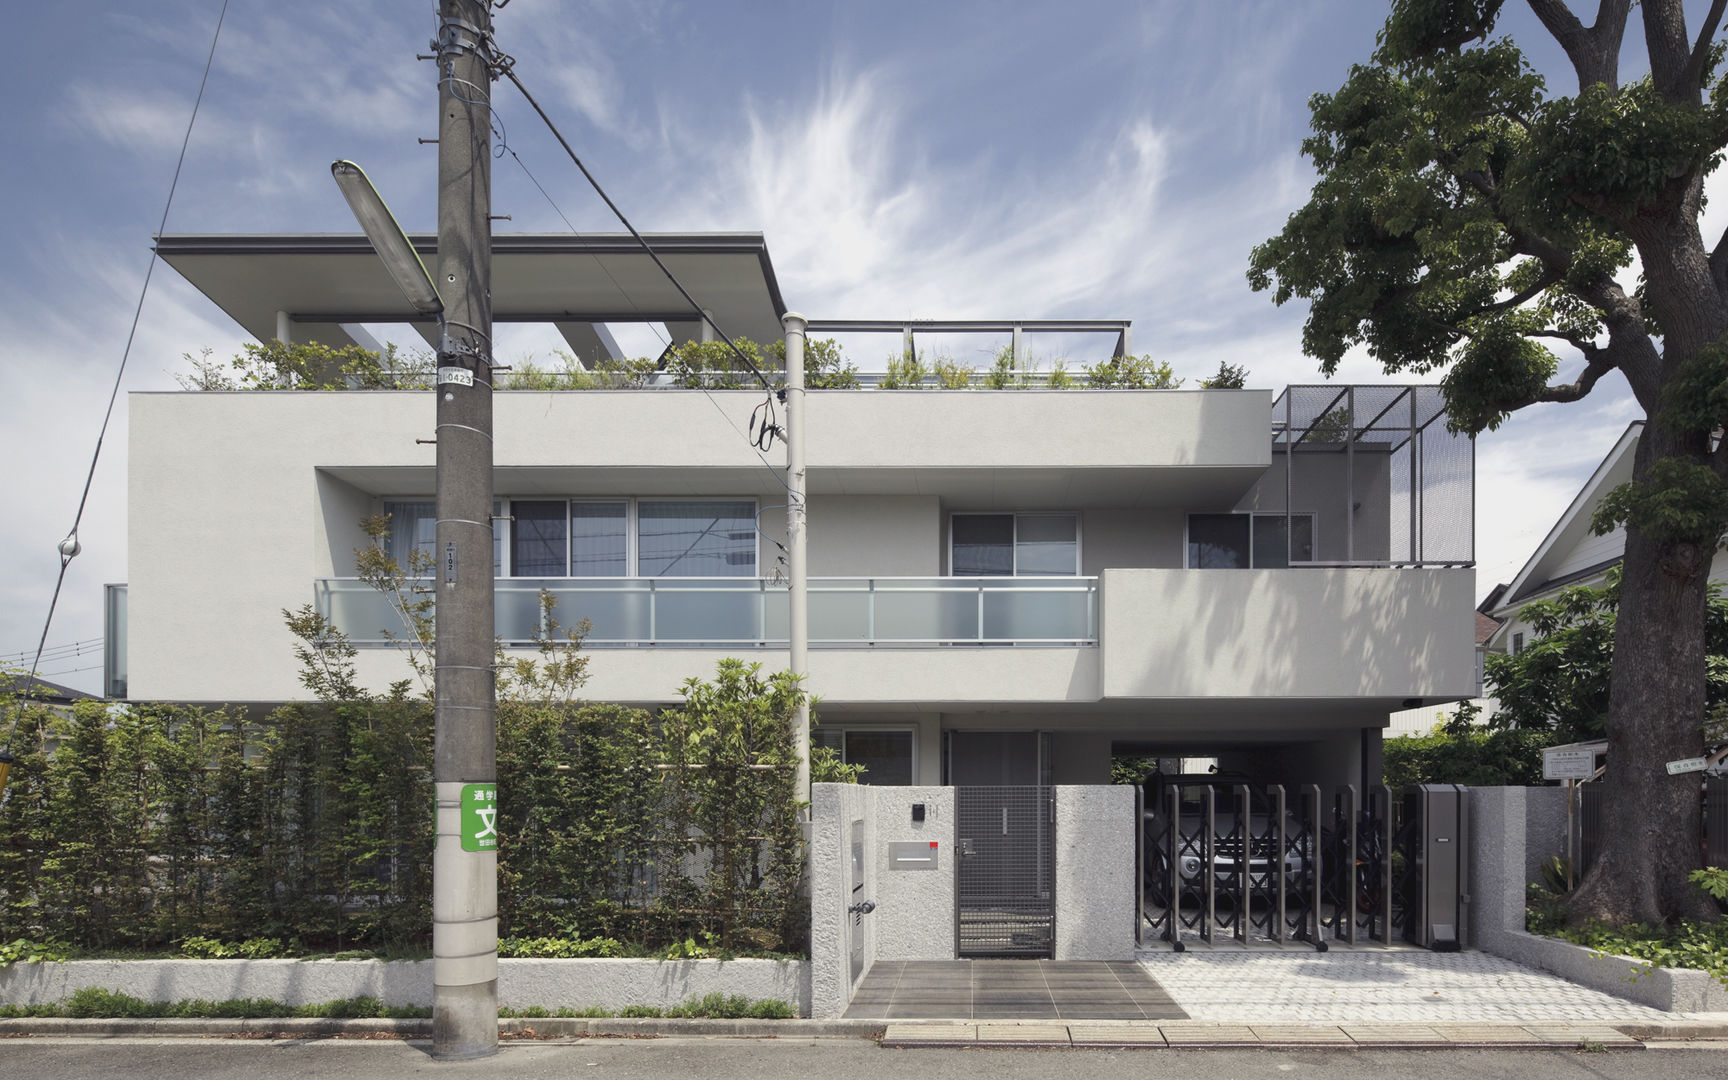 ミドセンチュリーテイスト 居間がテラスと一体化して繋がる成城の住まい, JWA，Jun Watanabe & Associates JWA，Jun Watanabe & Associates Rumah Modern